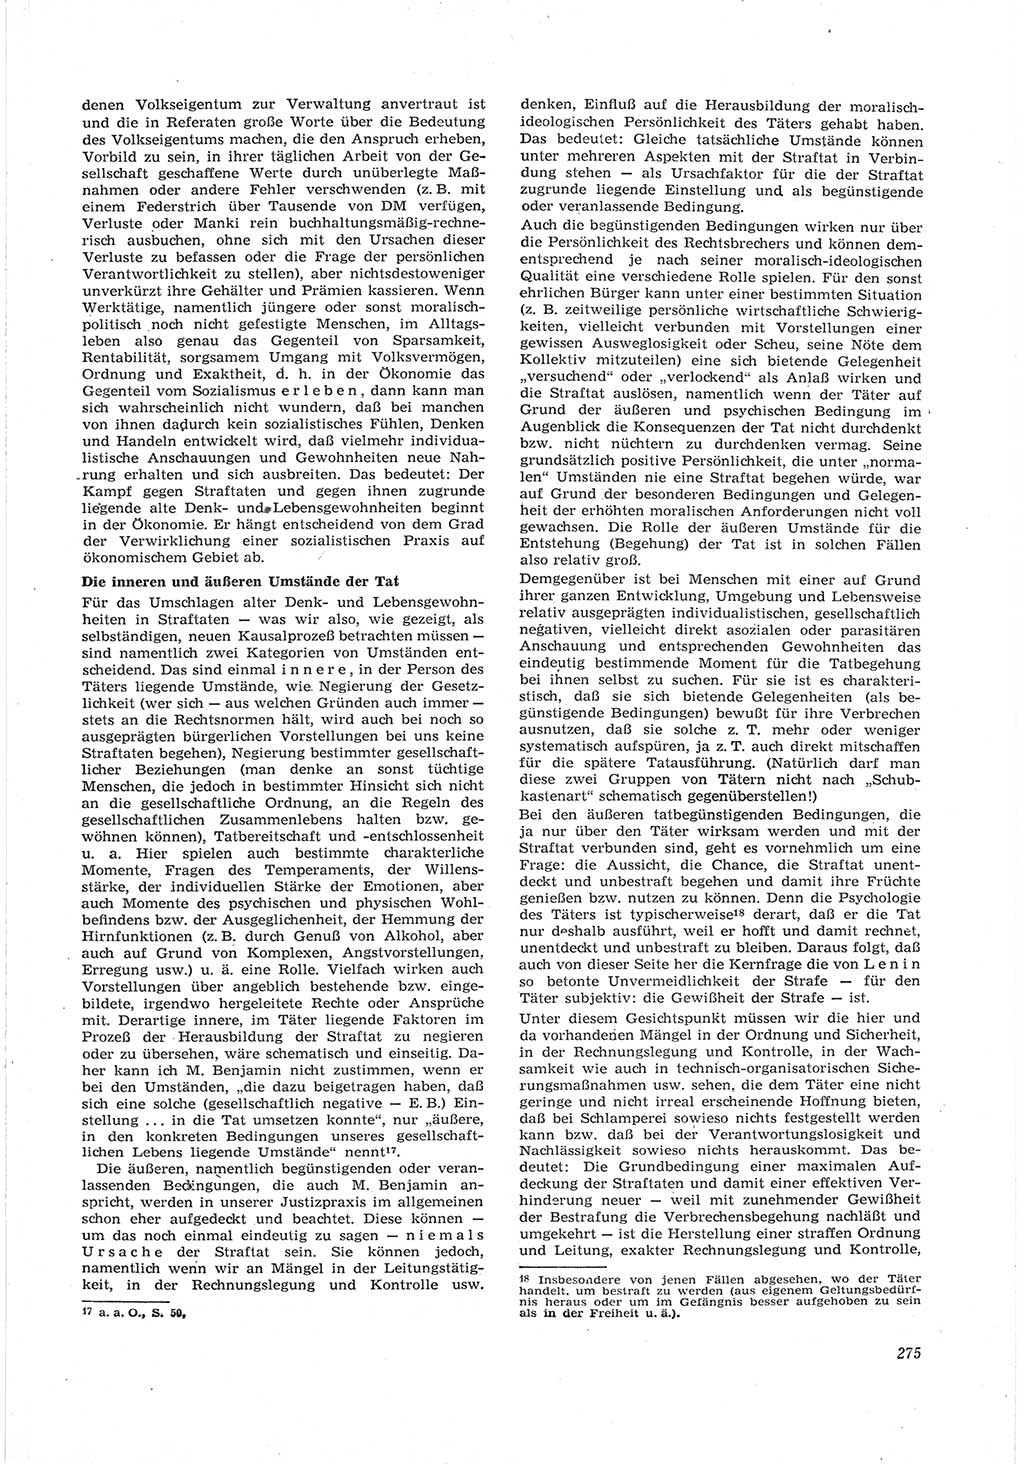 Neue Justiz (NJ), Zeitschrift für Recht und Rechtswissenschaft [Deutsche Demokratische Republik (DDR)], 17. Jahrgang 1963, Seite 275 (NJ DDR 1963, S. 275)